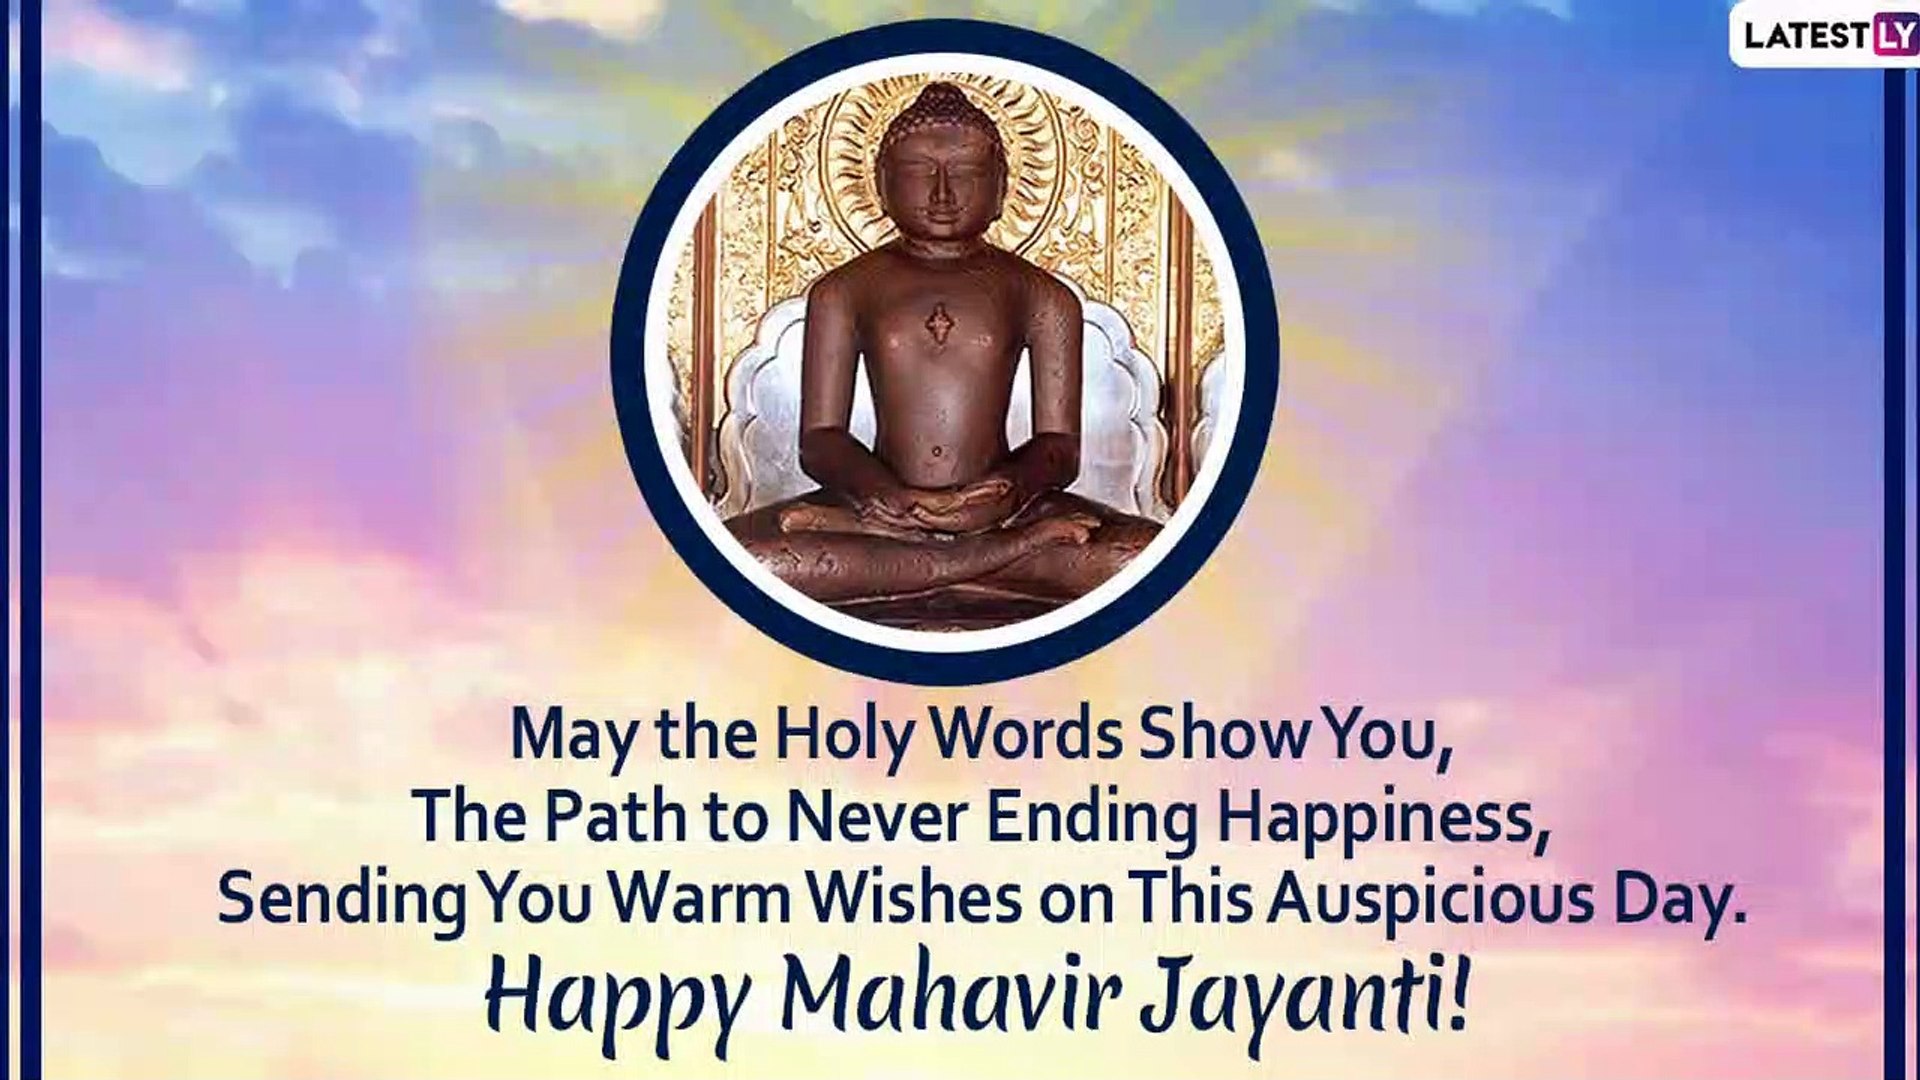 Mahavir Jayanti 2020 Wishes: WhatsApp Messages, Images & Greetings to Send  on Mahavir Janma Kalyanak - video Dailymotion